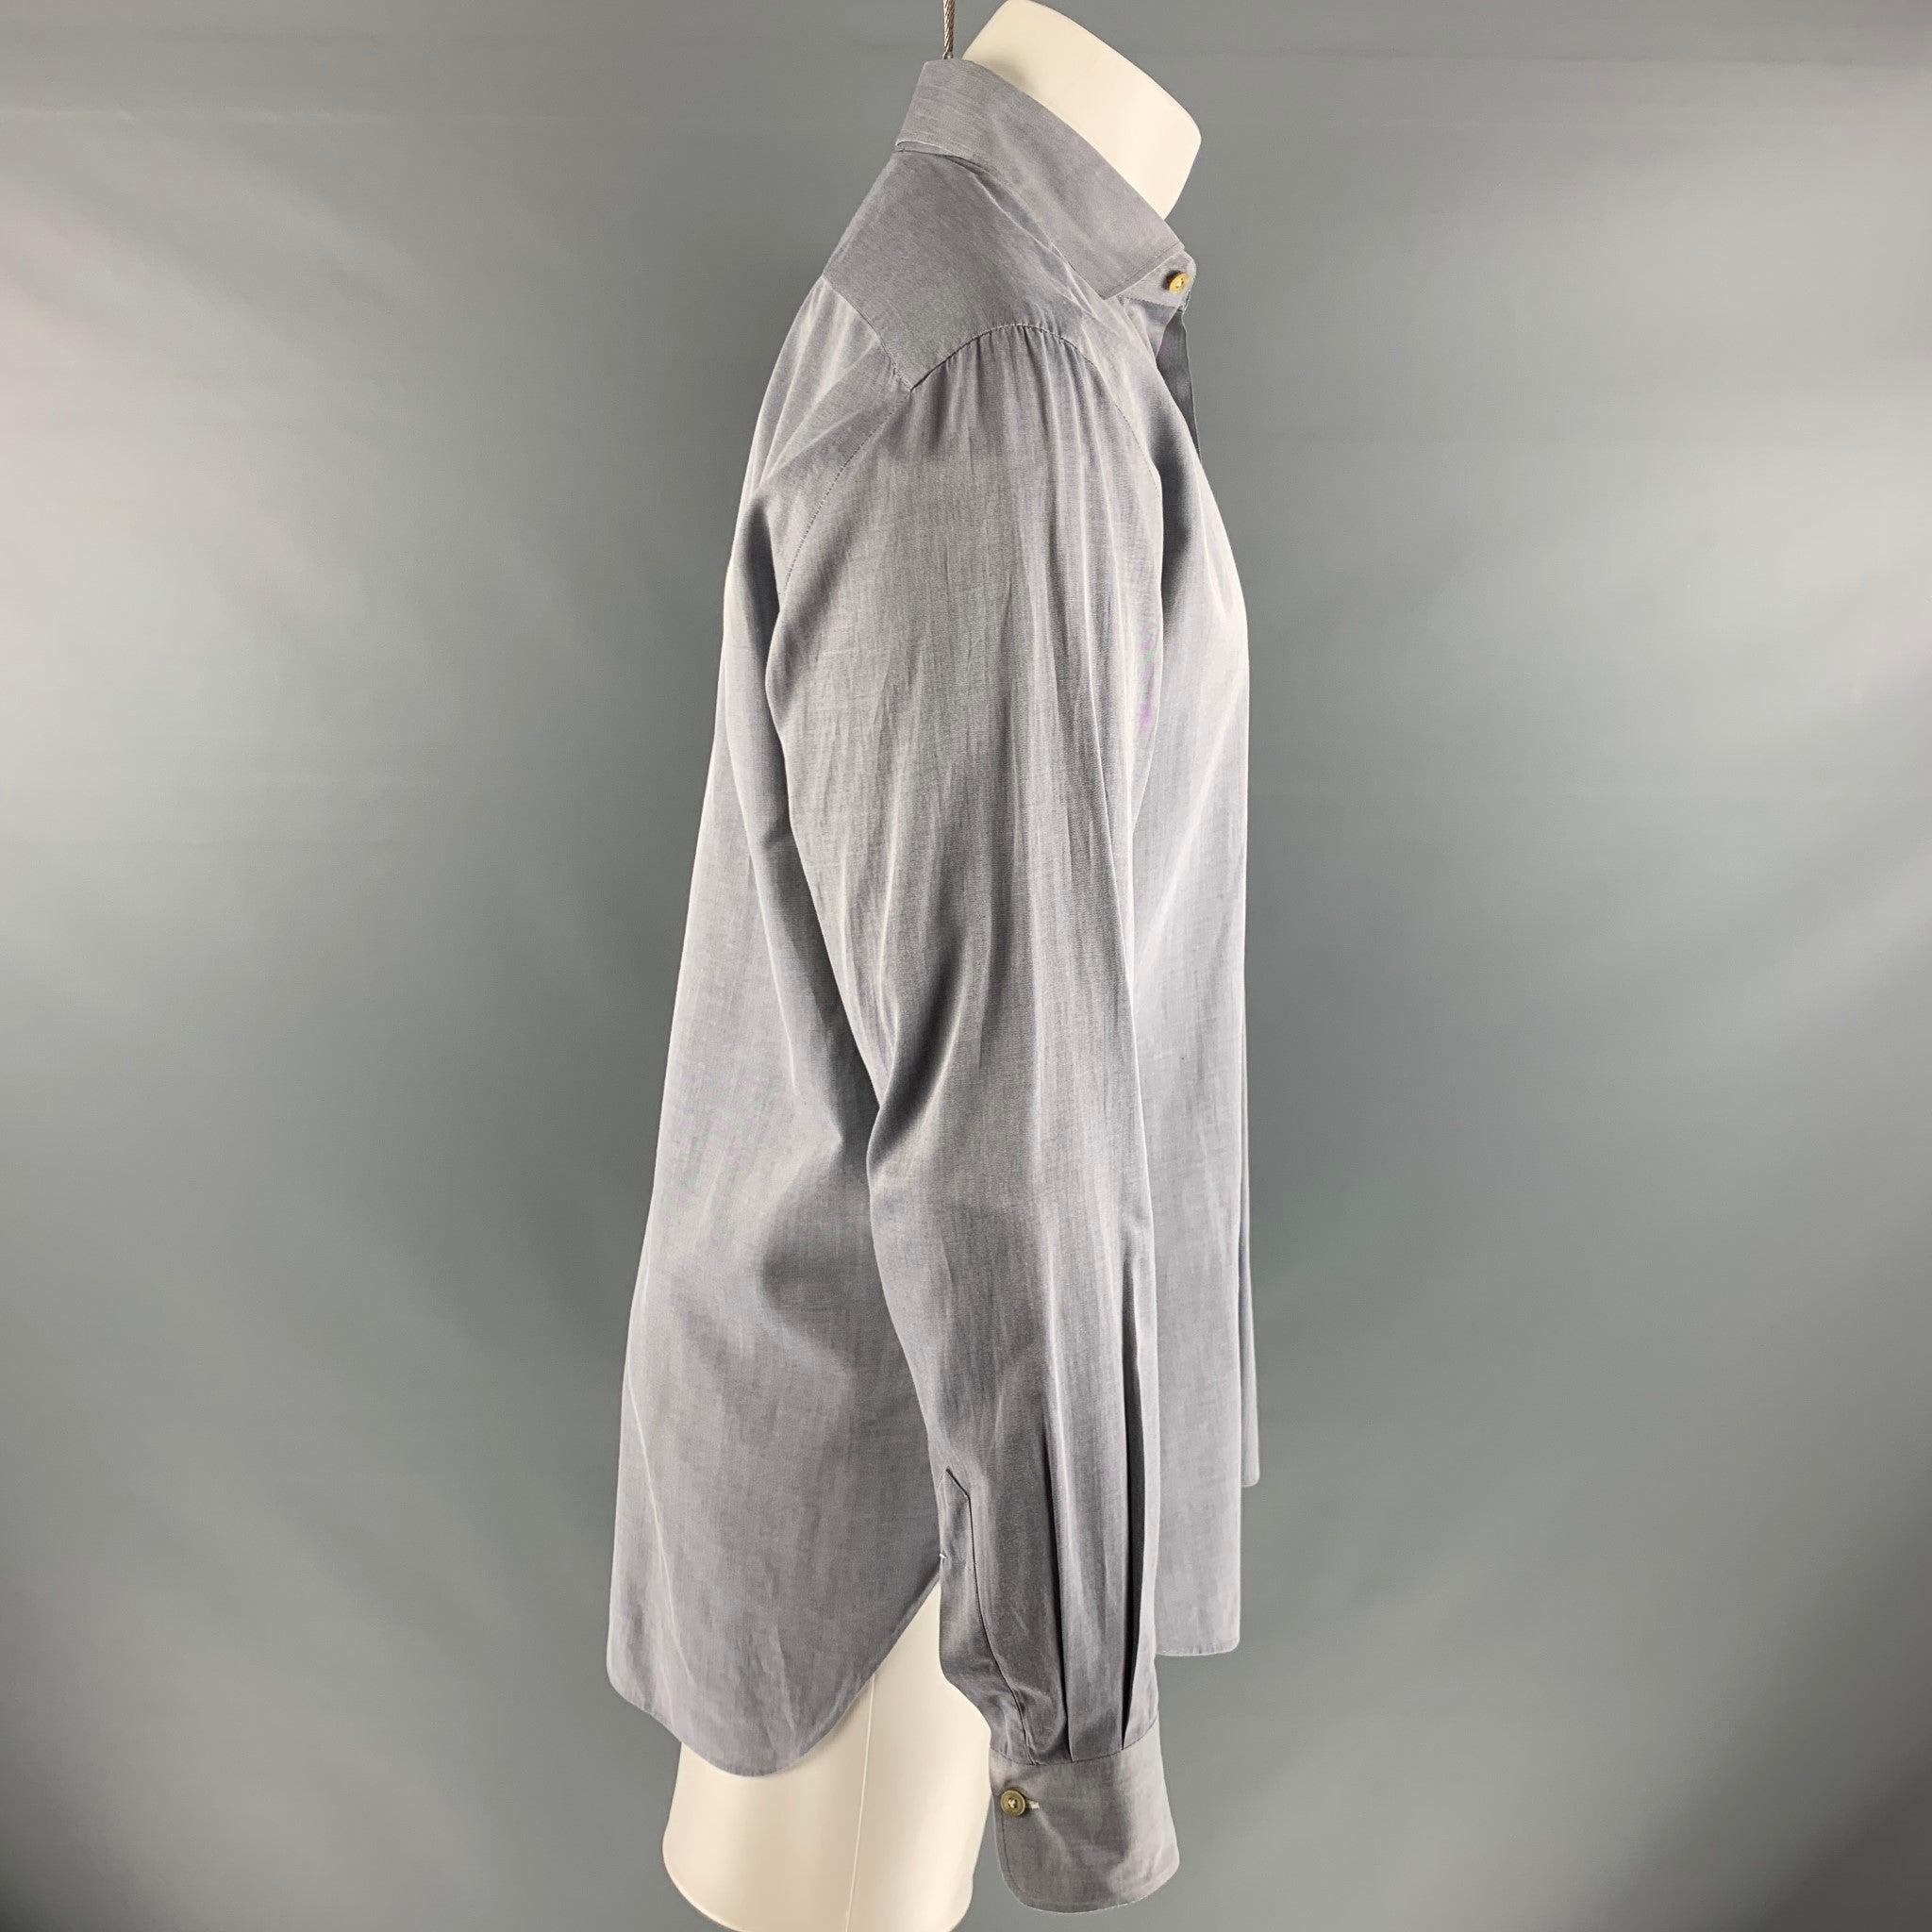 Das langärmelige Hemd von KITON ist aus 100% Baumwolle und hat einen breiten Kragen und einen Knopfverschluss.
Made in Italy. sehr guter gebrauchter Zustand. 

Markiert:   15 3/4 & 40 

Abmessungen: 
 
Schultern: 18 Zoll Brustumfang: 42 Zoll